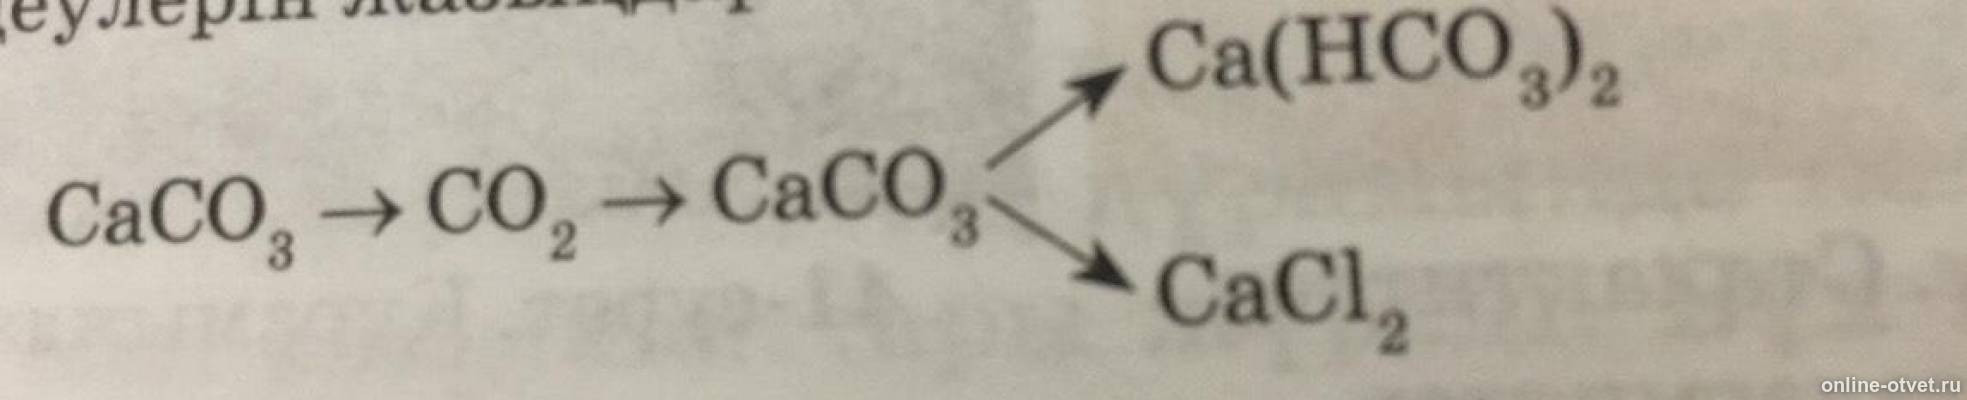 Ca hco3 2 mg no3 2. CA(hco3)2. Caco3 CA hco3. CA hco3 2 + co3. Из caco3 в CA hco3.